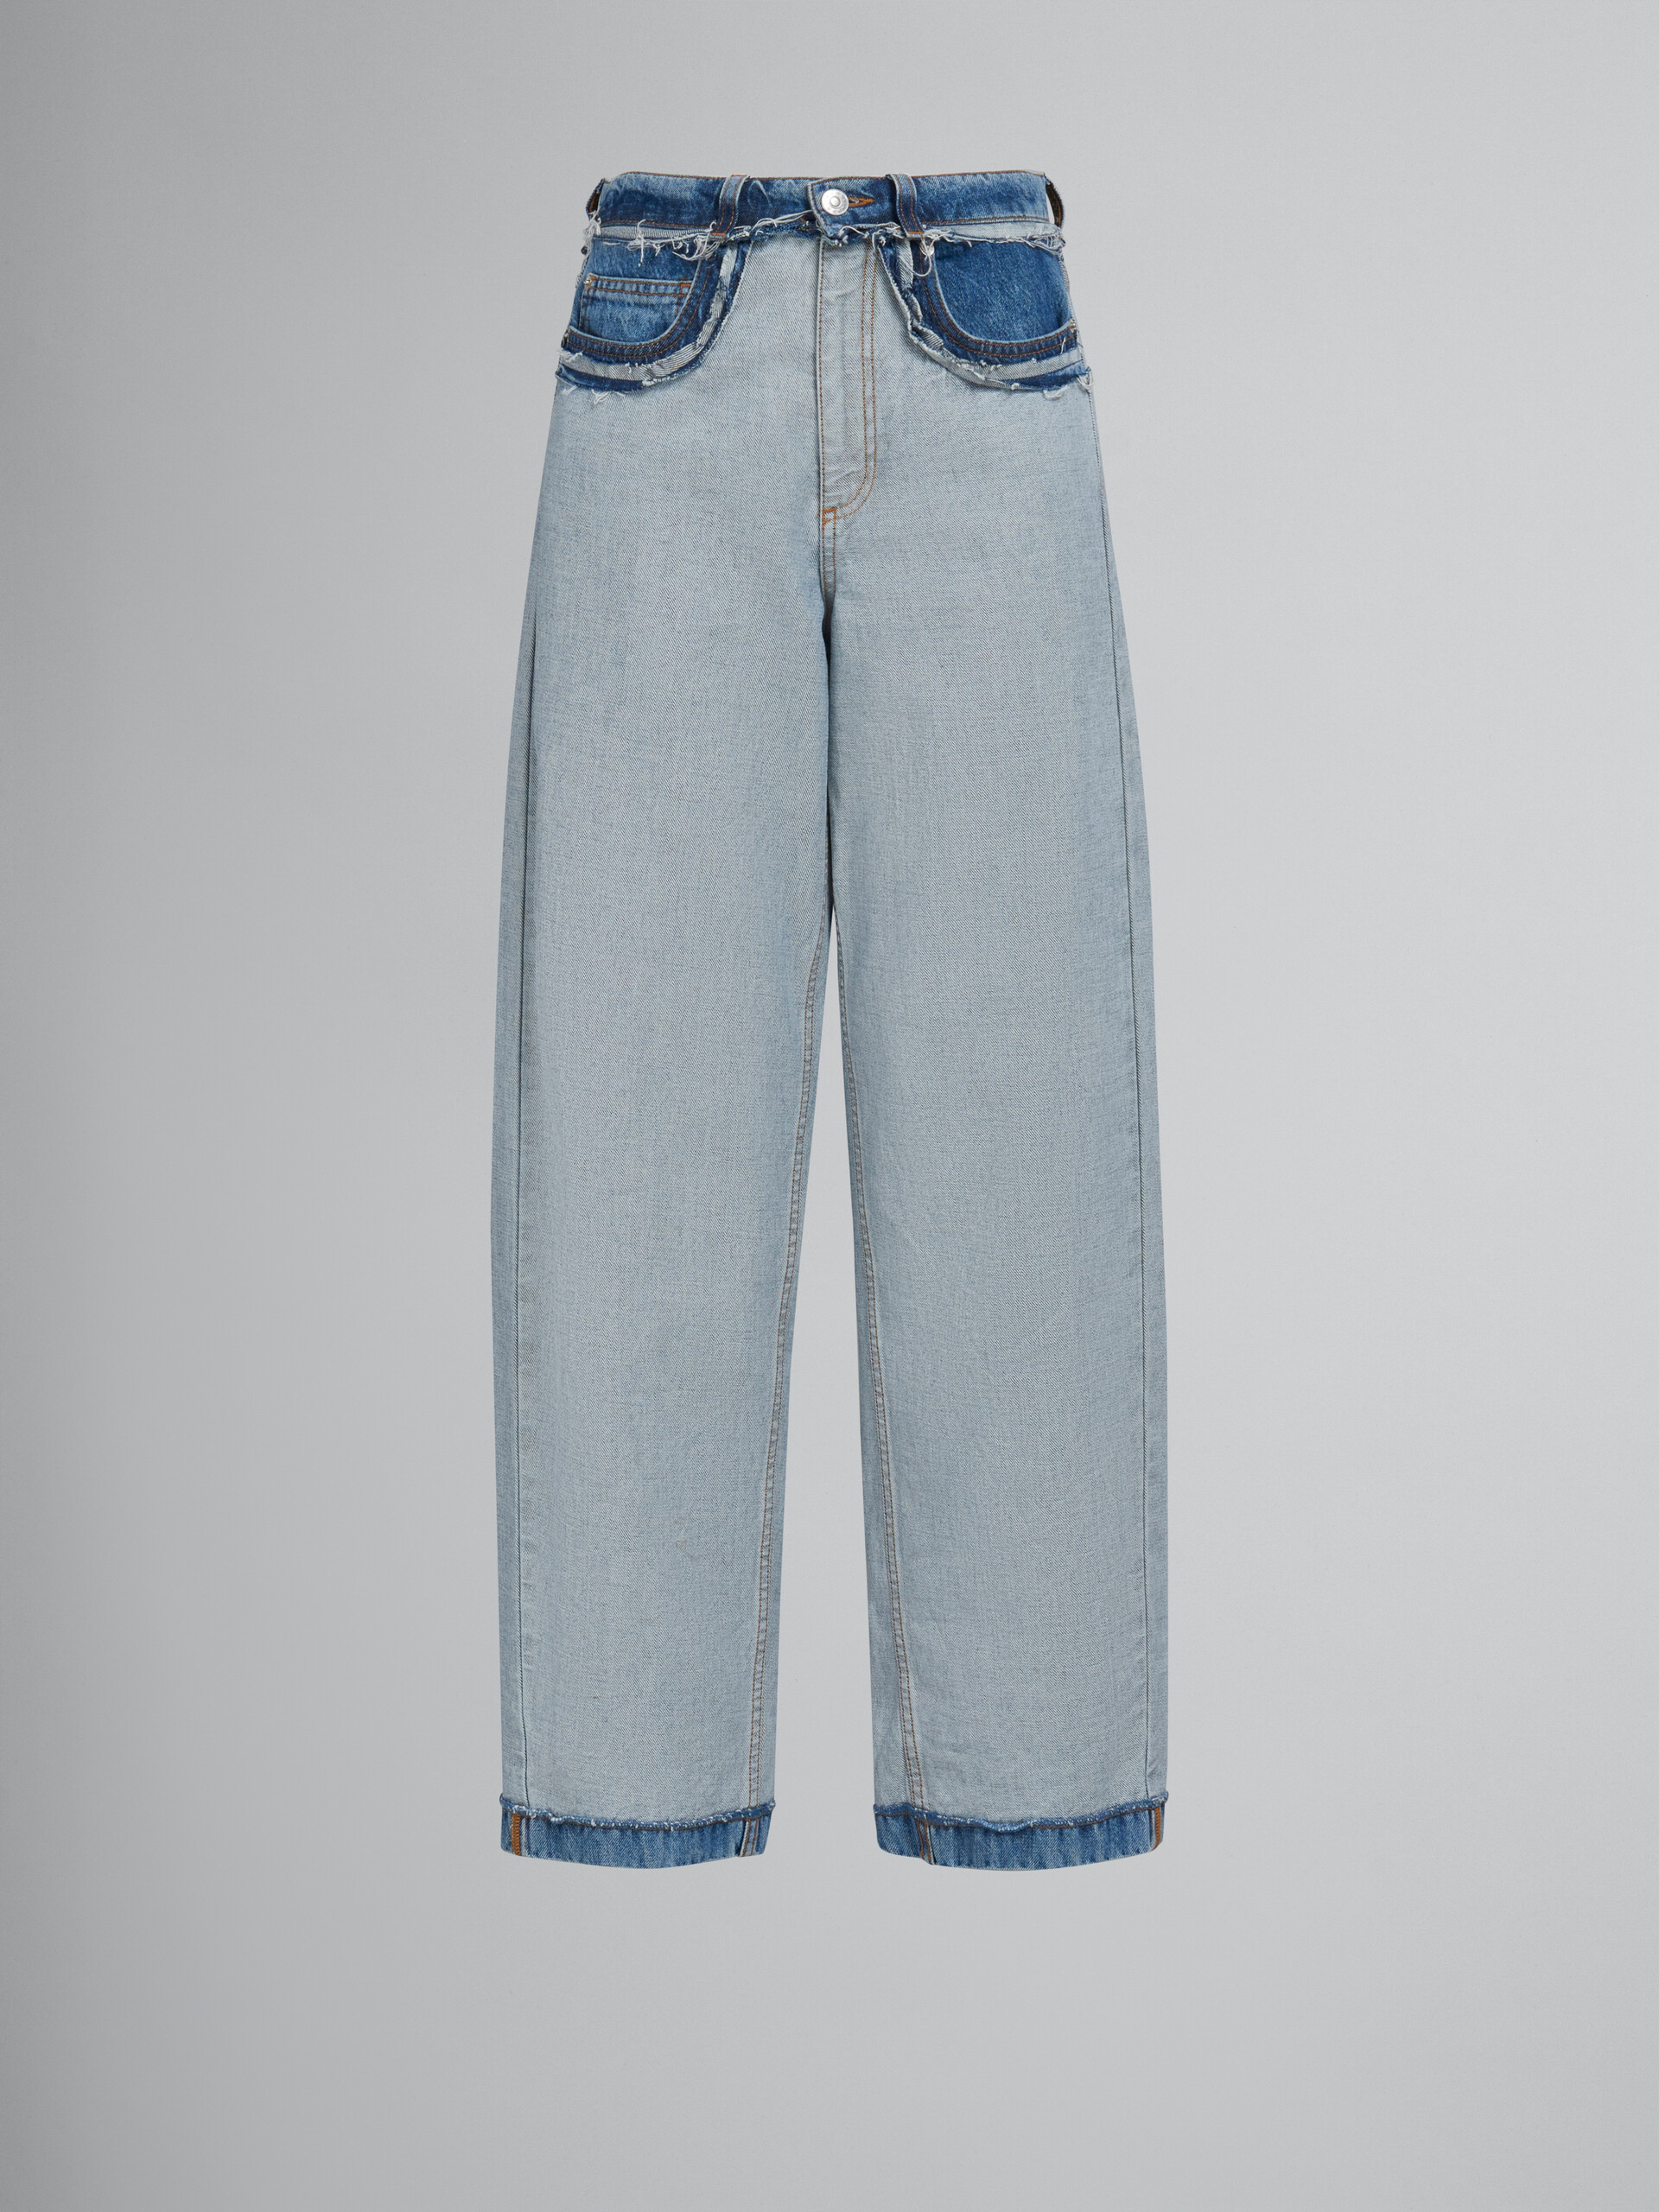 Pantalón de denim azul de corte carrot con costuras internas a la vista - Pantalones - Image 1